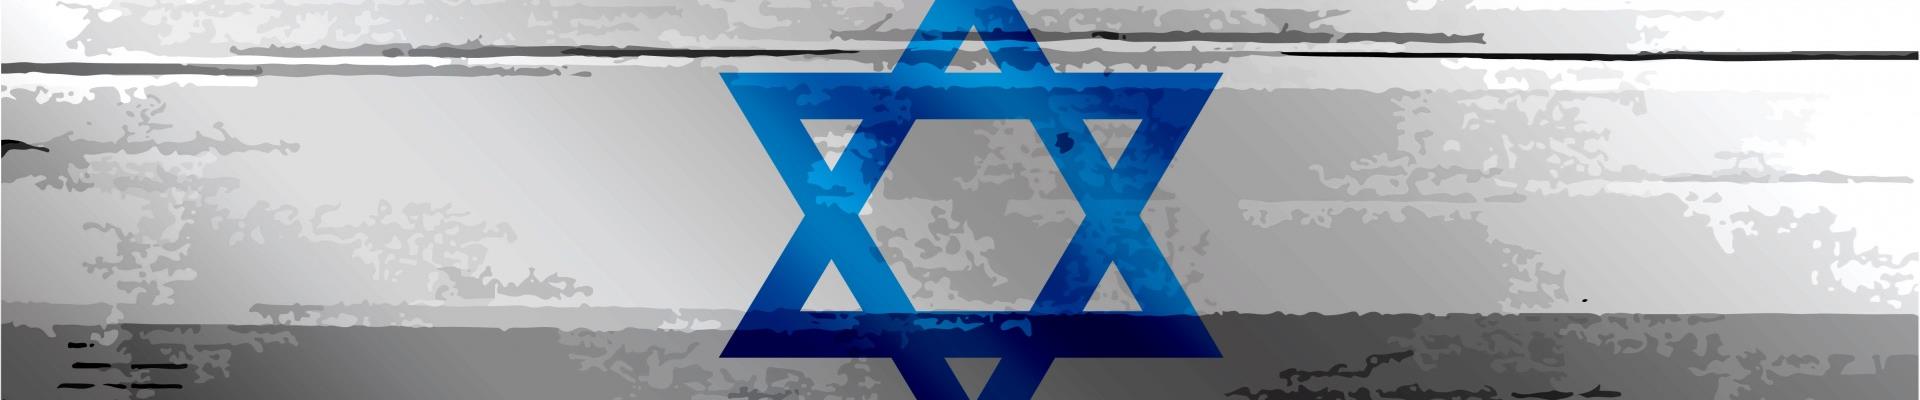 Puma na Seleção de Israel: Empresa deixará de ser a patrocinadora da equipe